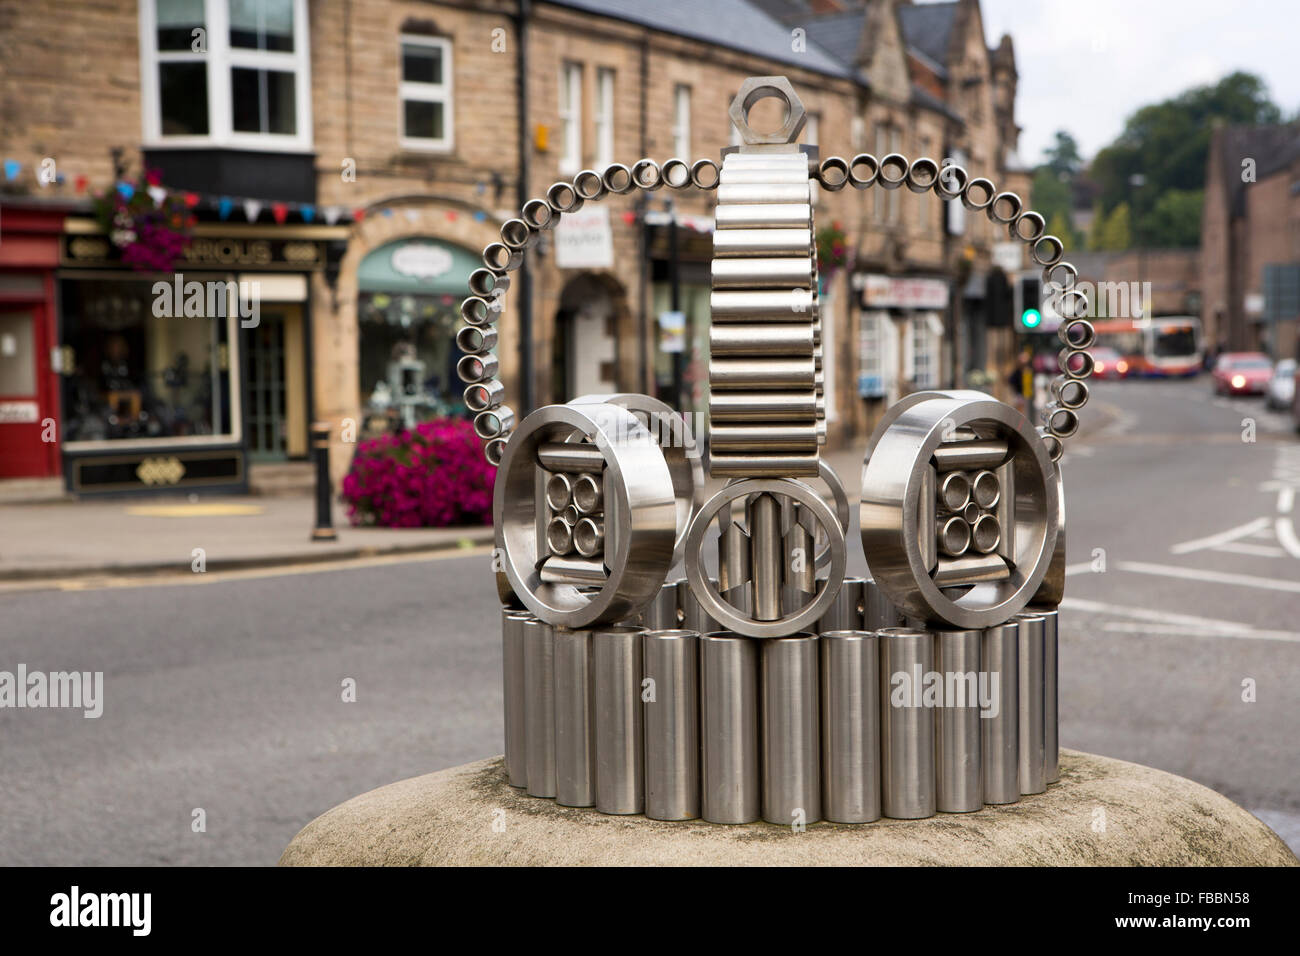 Royaume-uni, Angleterre, Derbyshire, Matlock, Square de la Couronne, l'acier inoxydable Jubilé d'argent de la sculpture de la couronne Banque D'Images